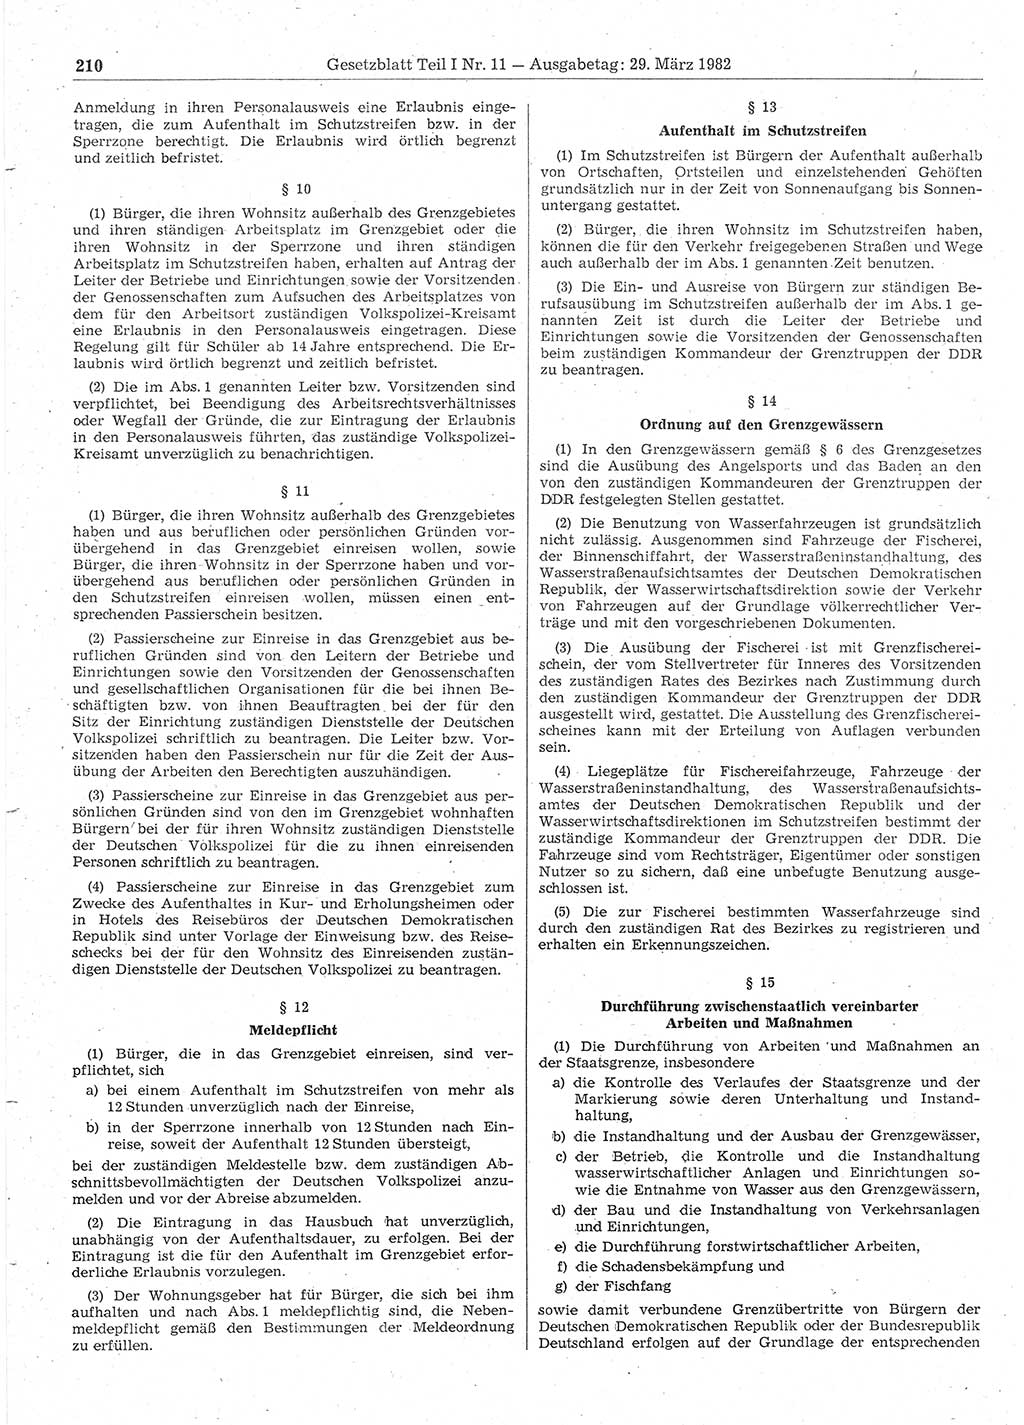 Gesetzblatt (GBl.) der Deutschen Demokratischen Republik (DDR) Teil Ⅰ 1982, Seite 210 (GBl. DDR Ⅰ 1982, S. 210)